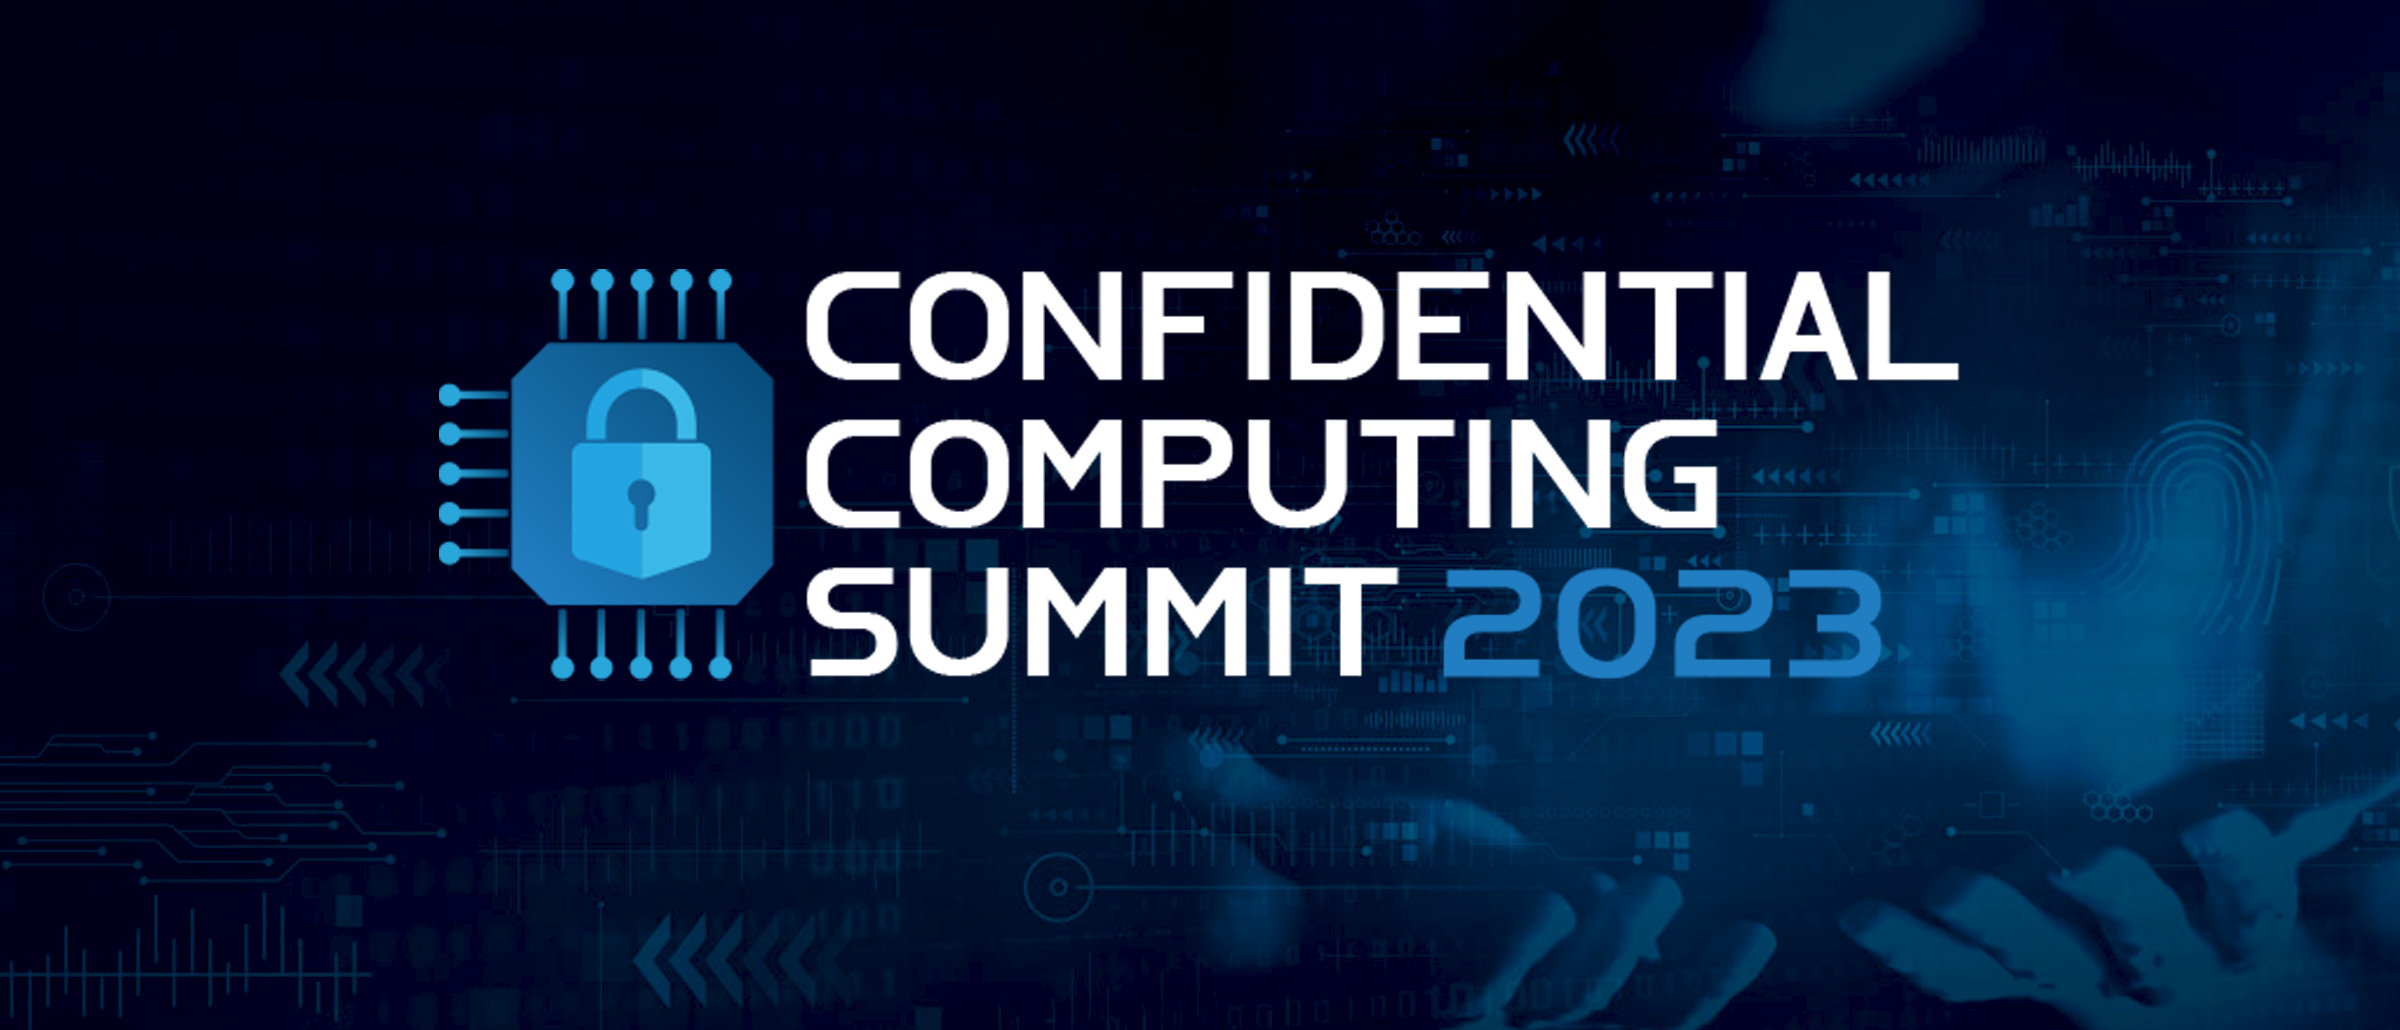 Confidential Computing Summit 2023